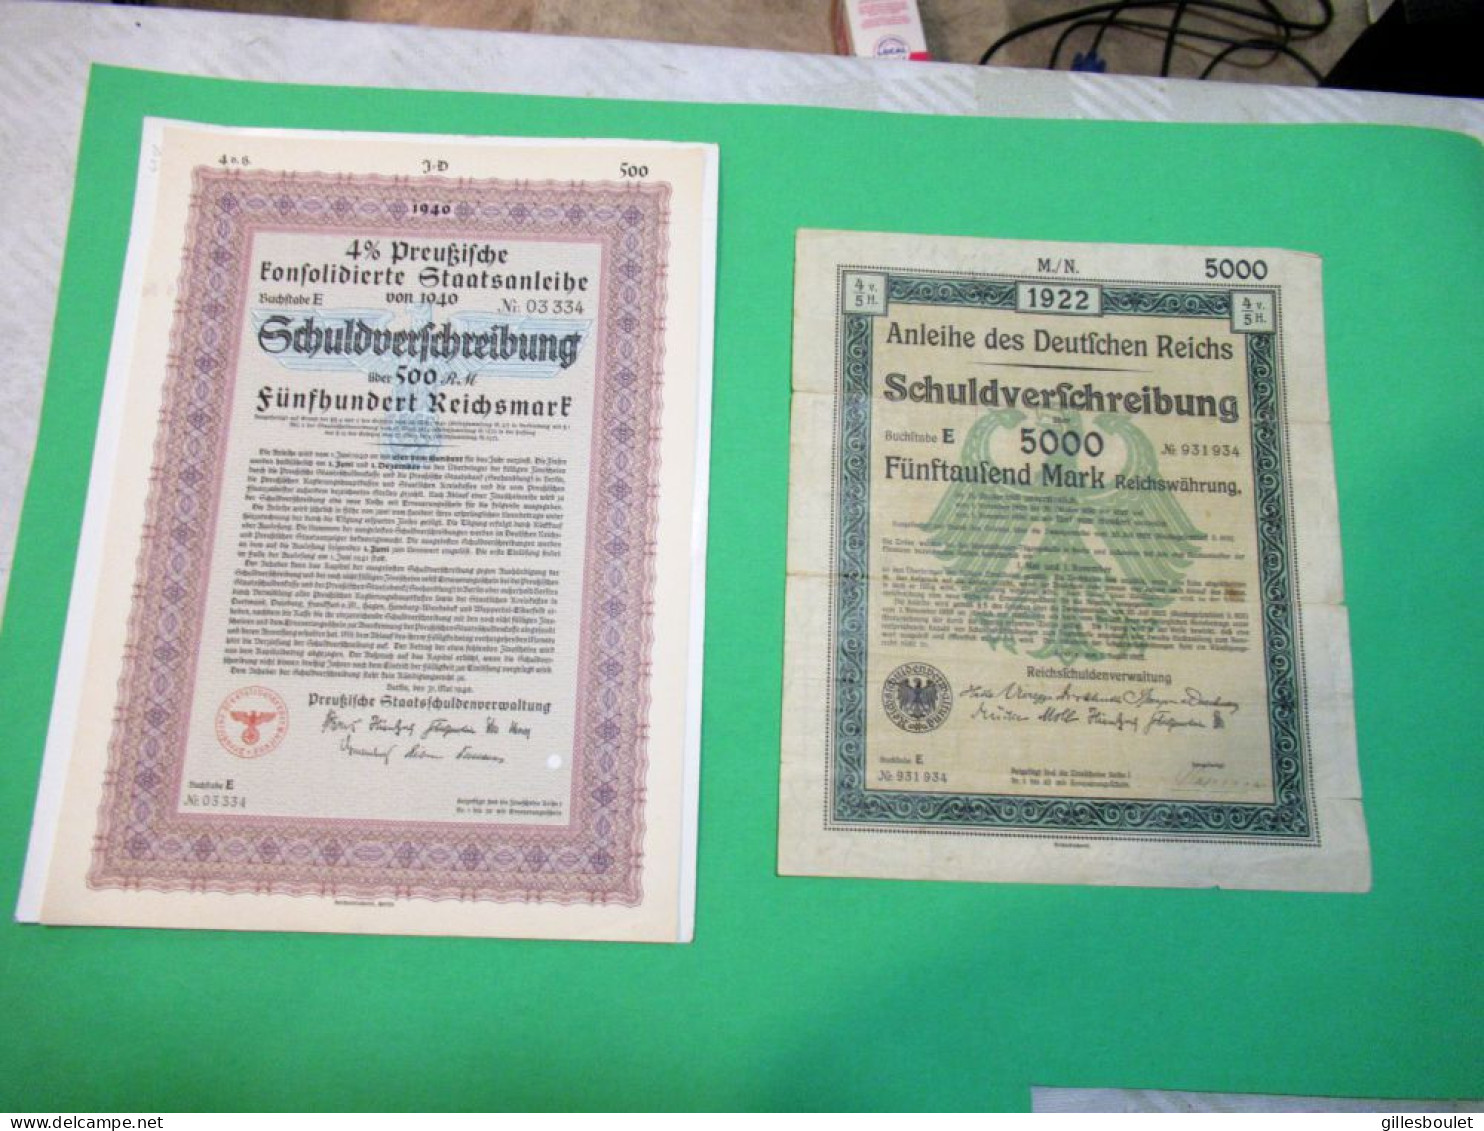 Rares 2 Grands Billet Allemagne. Emprunt De Guerre De 500 Mark 1940 UNC. Administration De La Dette 1922 5 000 Mark CIR. - Collections